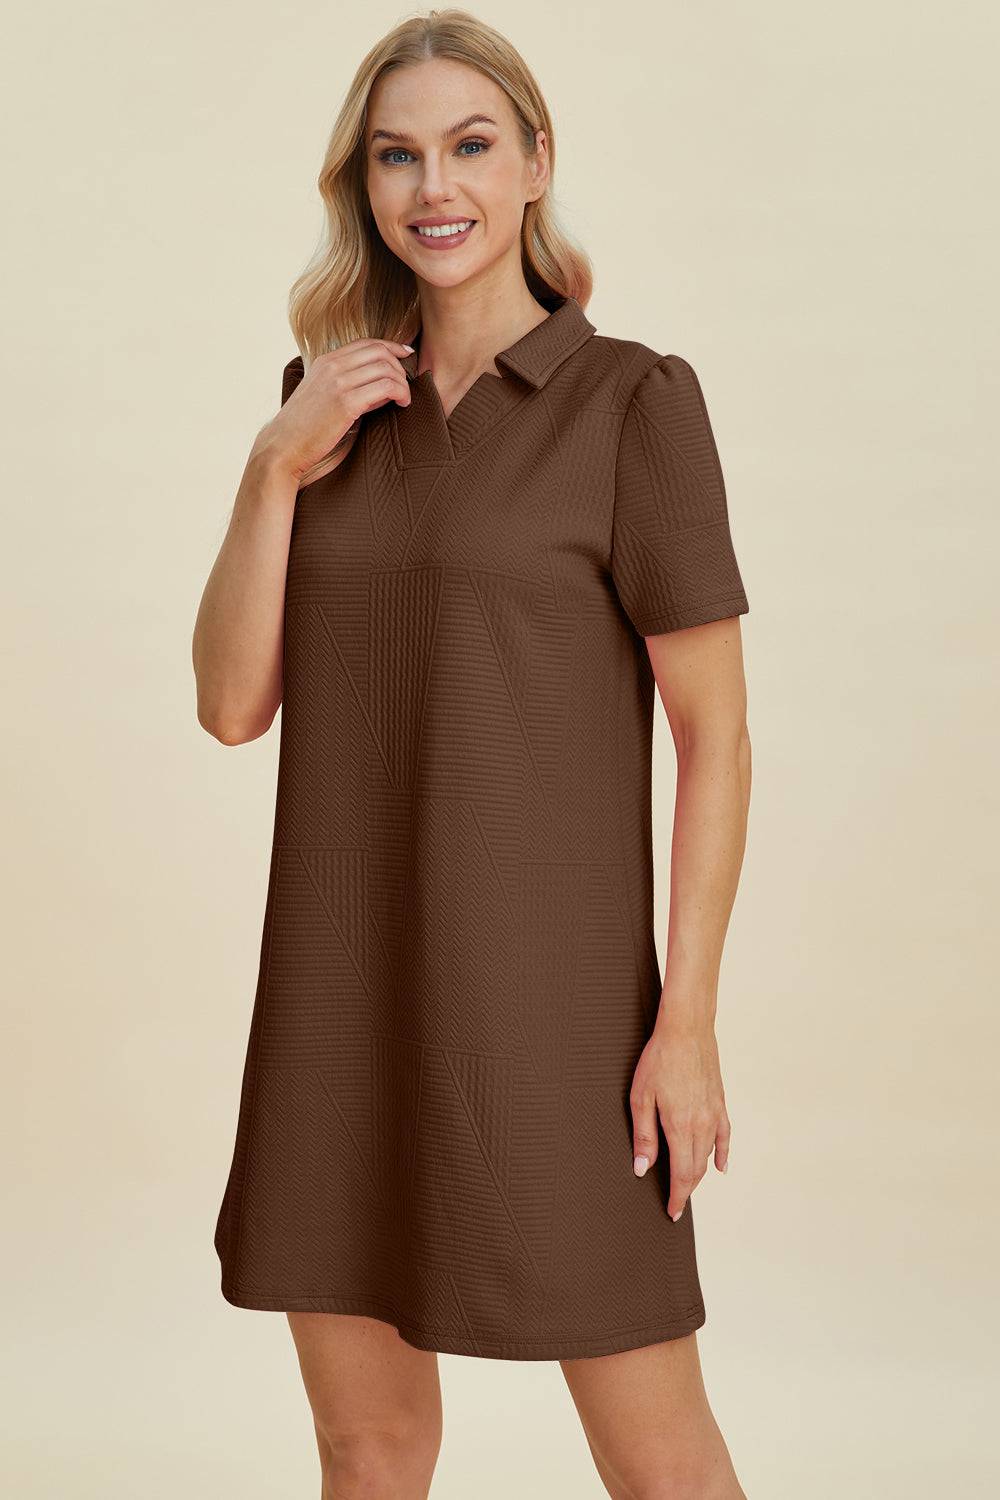 a woman wearing a brown shirt dress